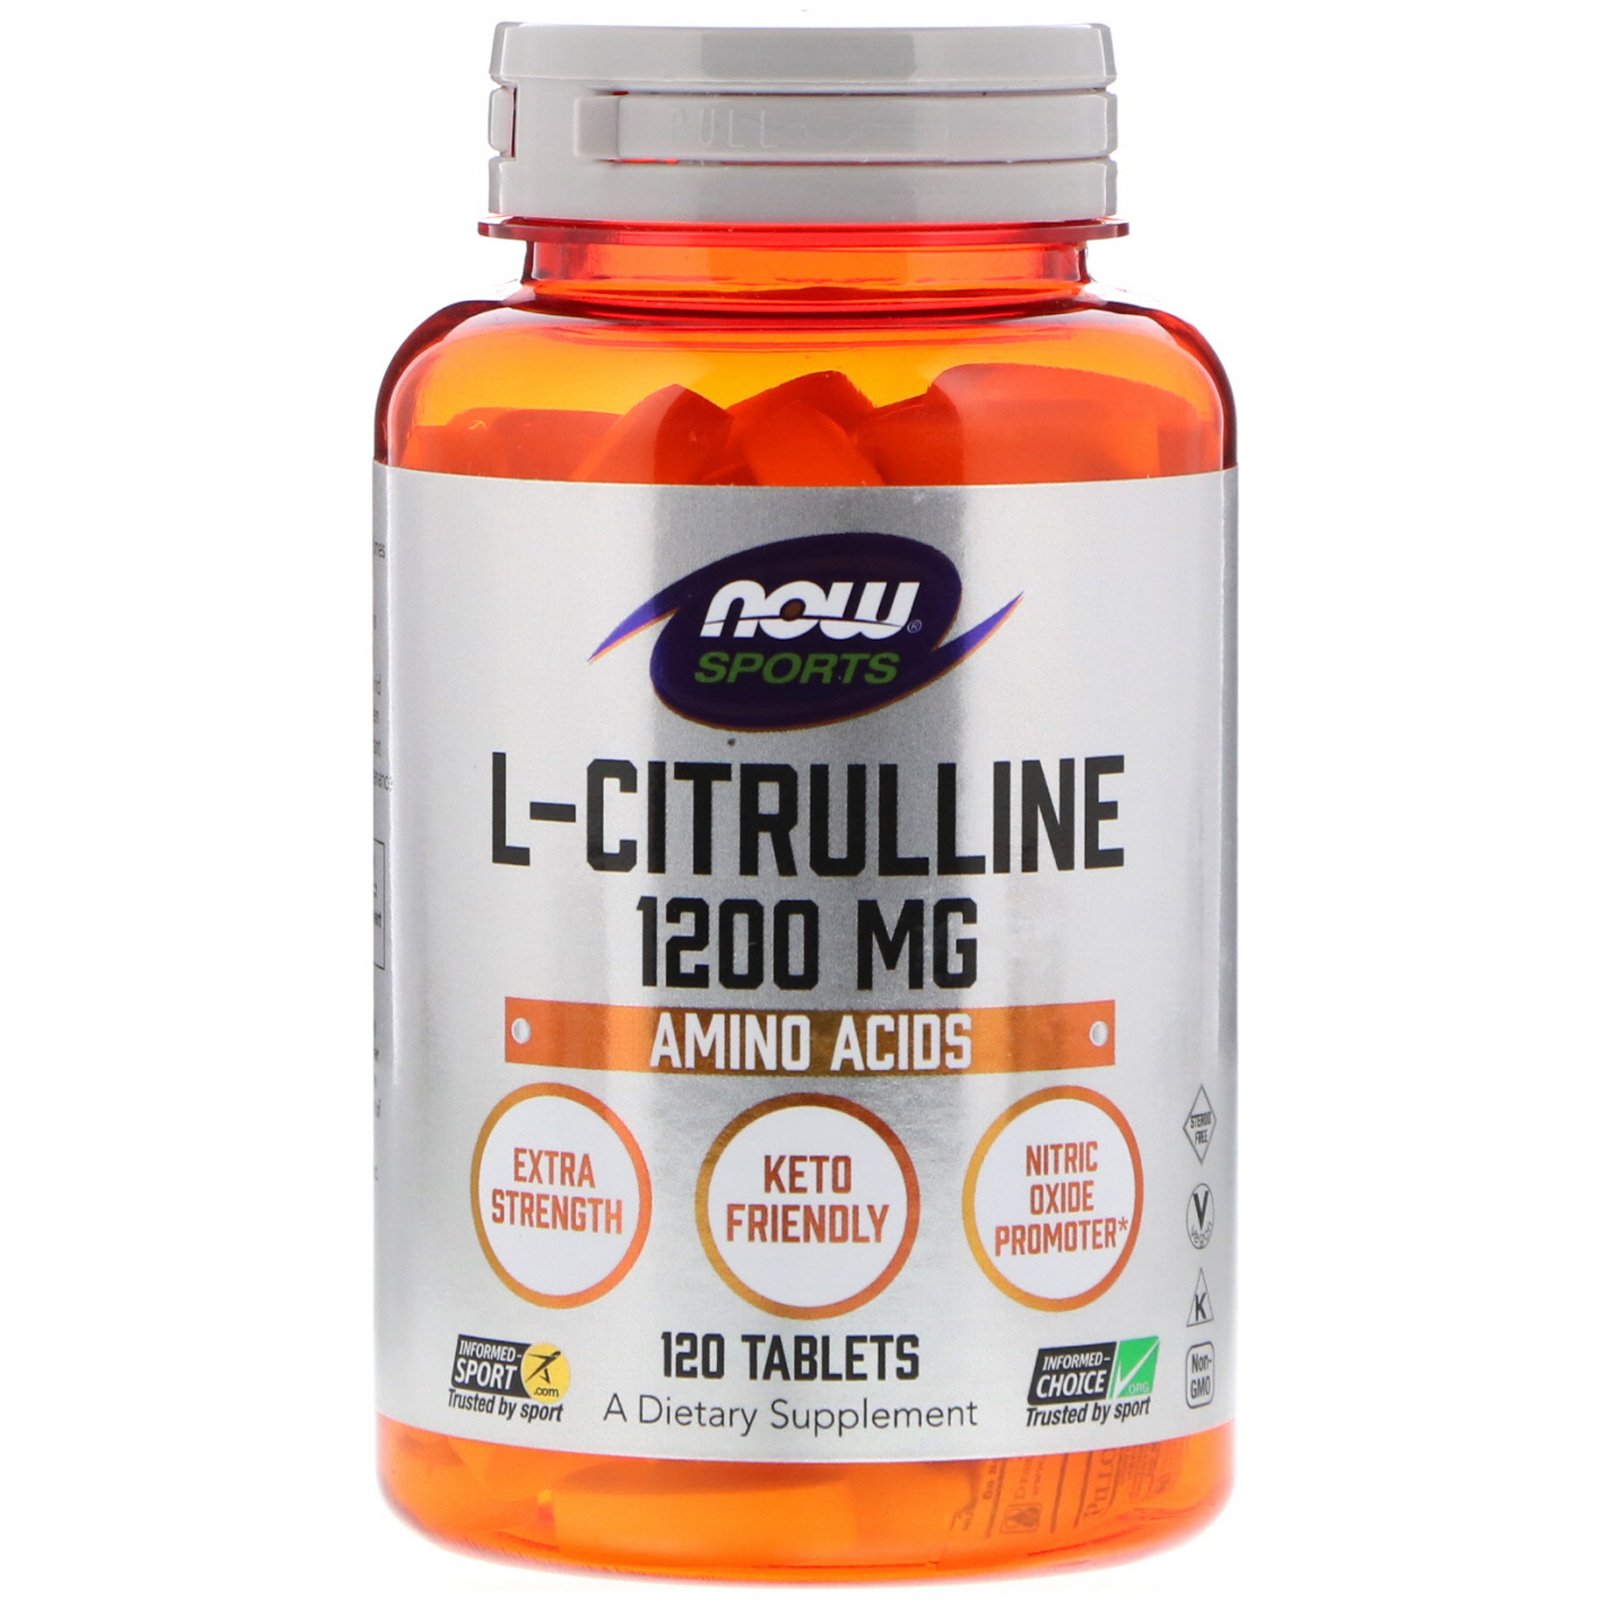 L-Citrulline 1200 mg, 120 шт, Now. Цитруллин. 